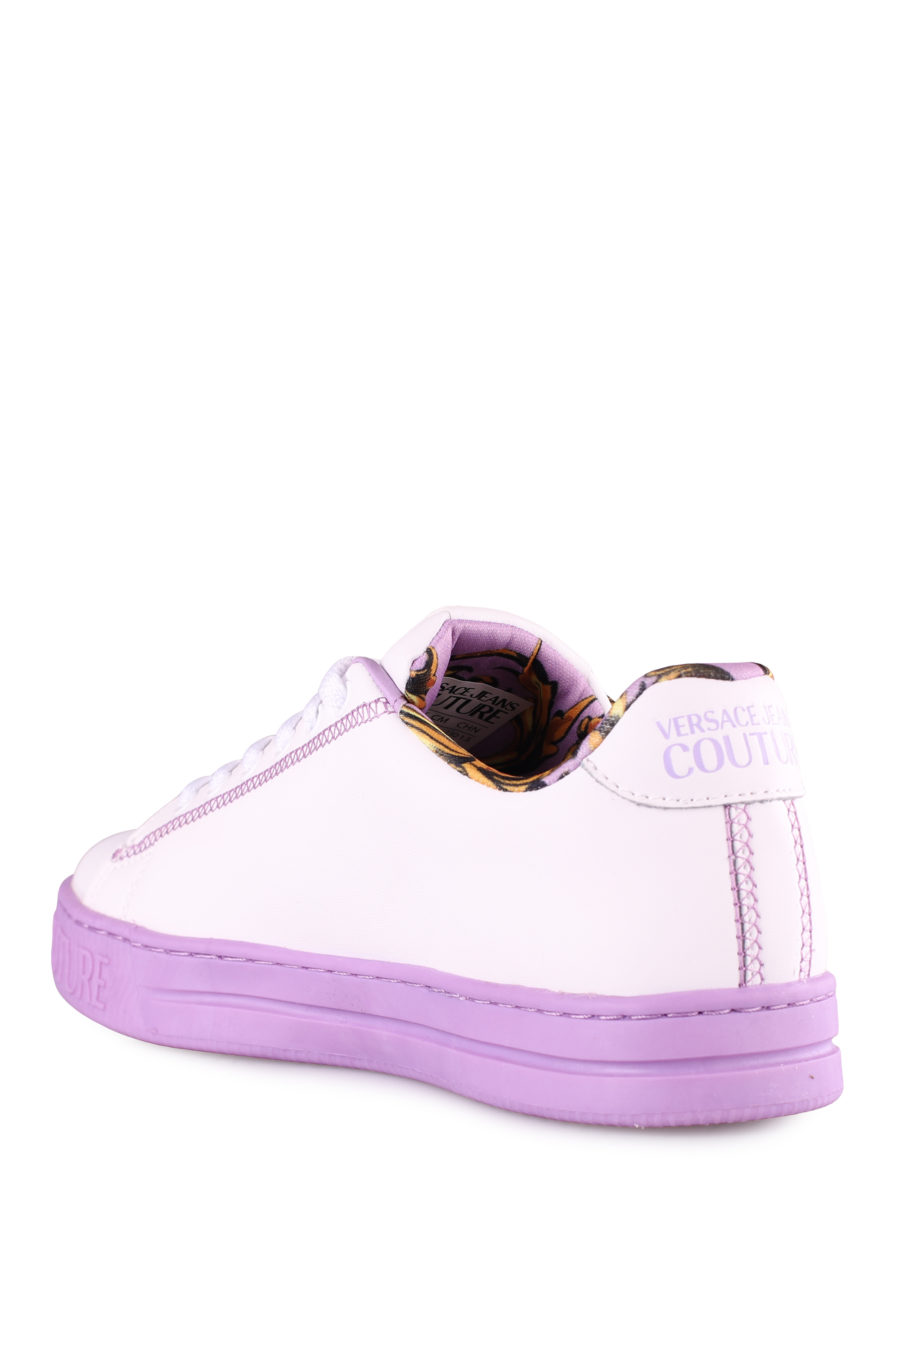 Zapatillas blancas y lila - IMG 4443